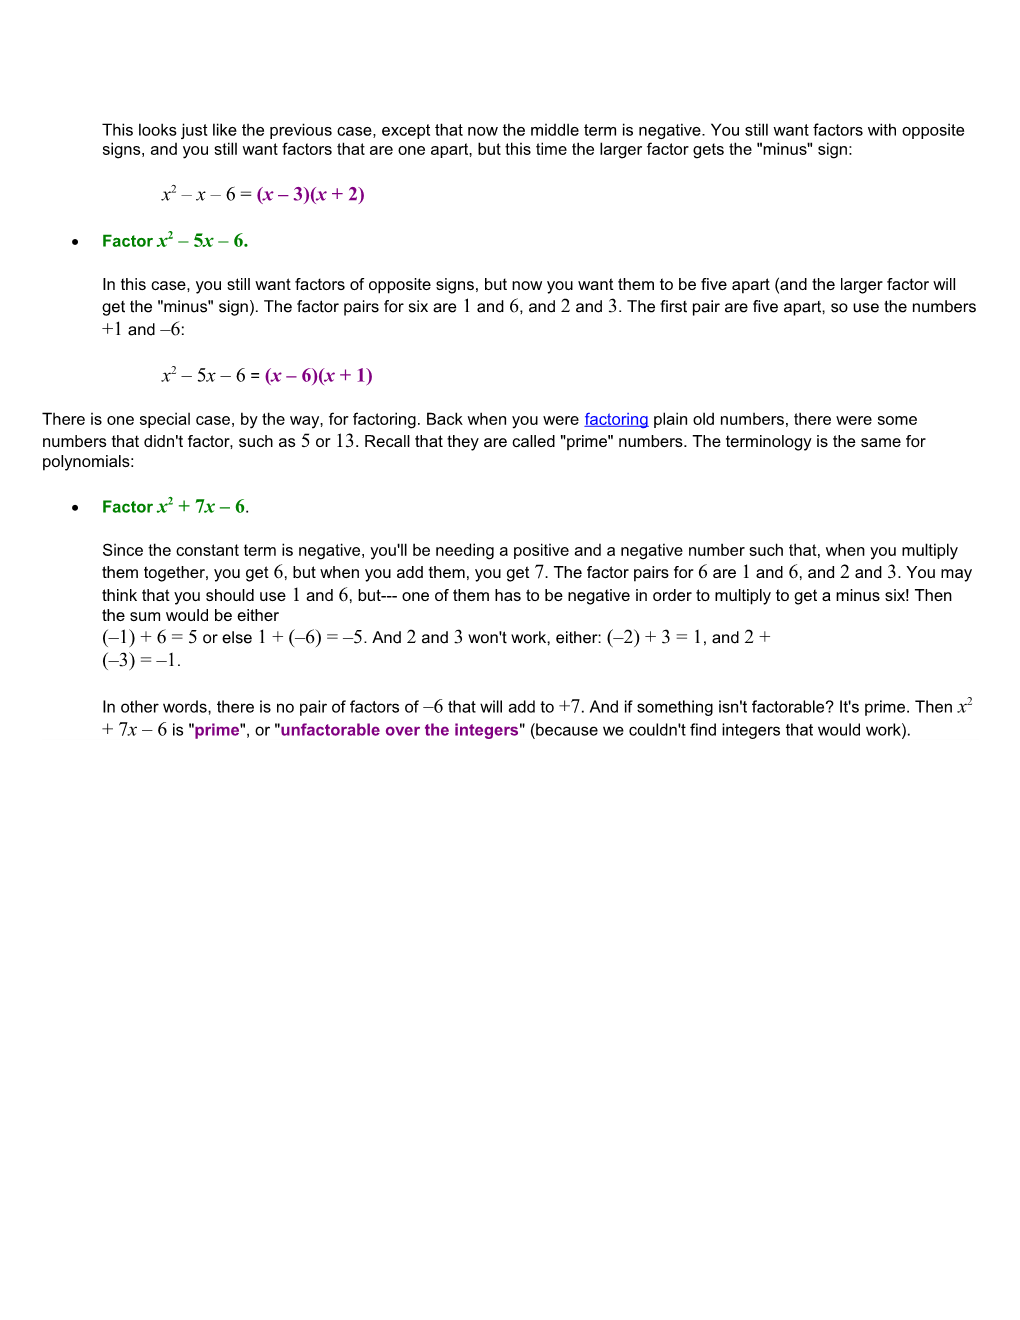 Factoring Quadratics: the Simple Case (Part 1 of 4)